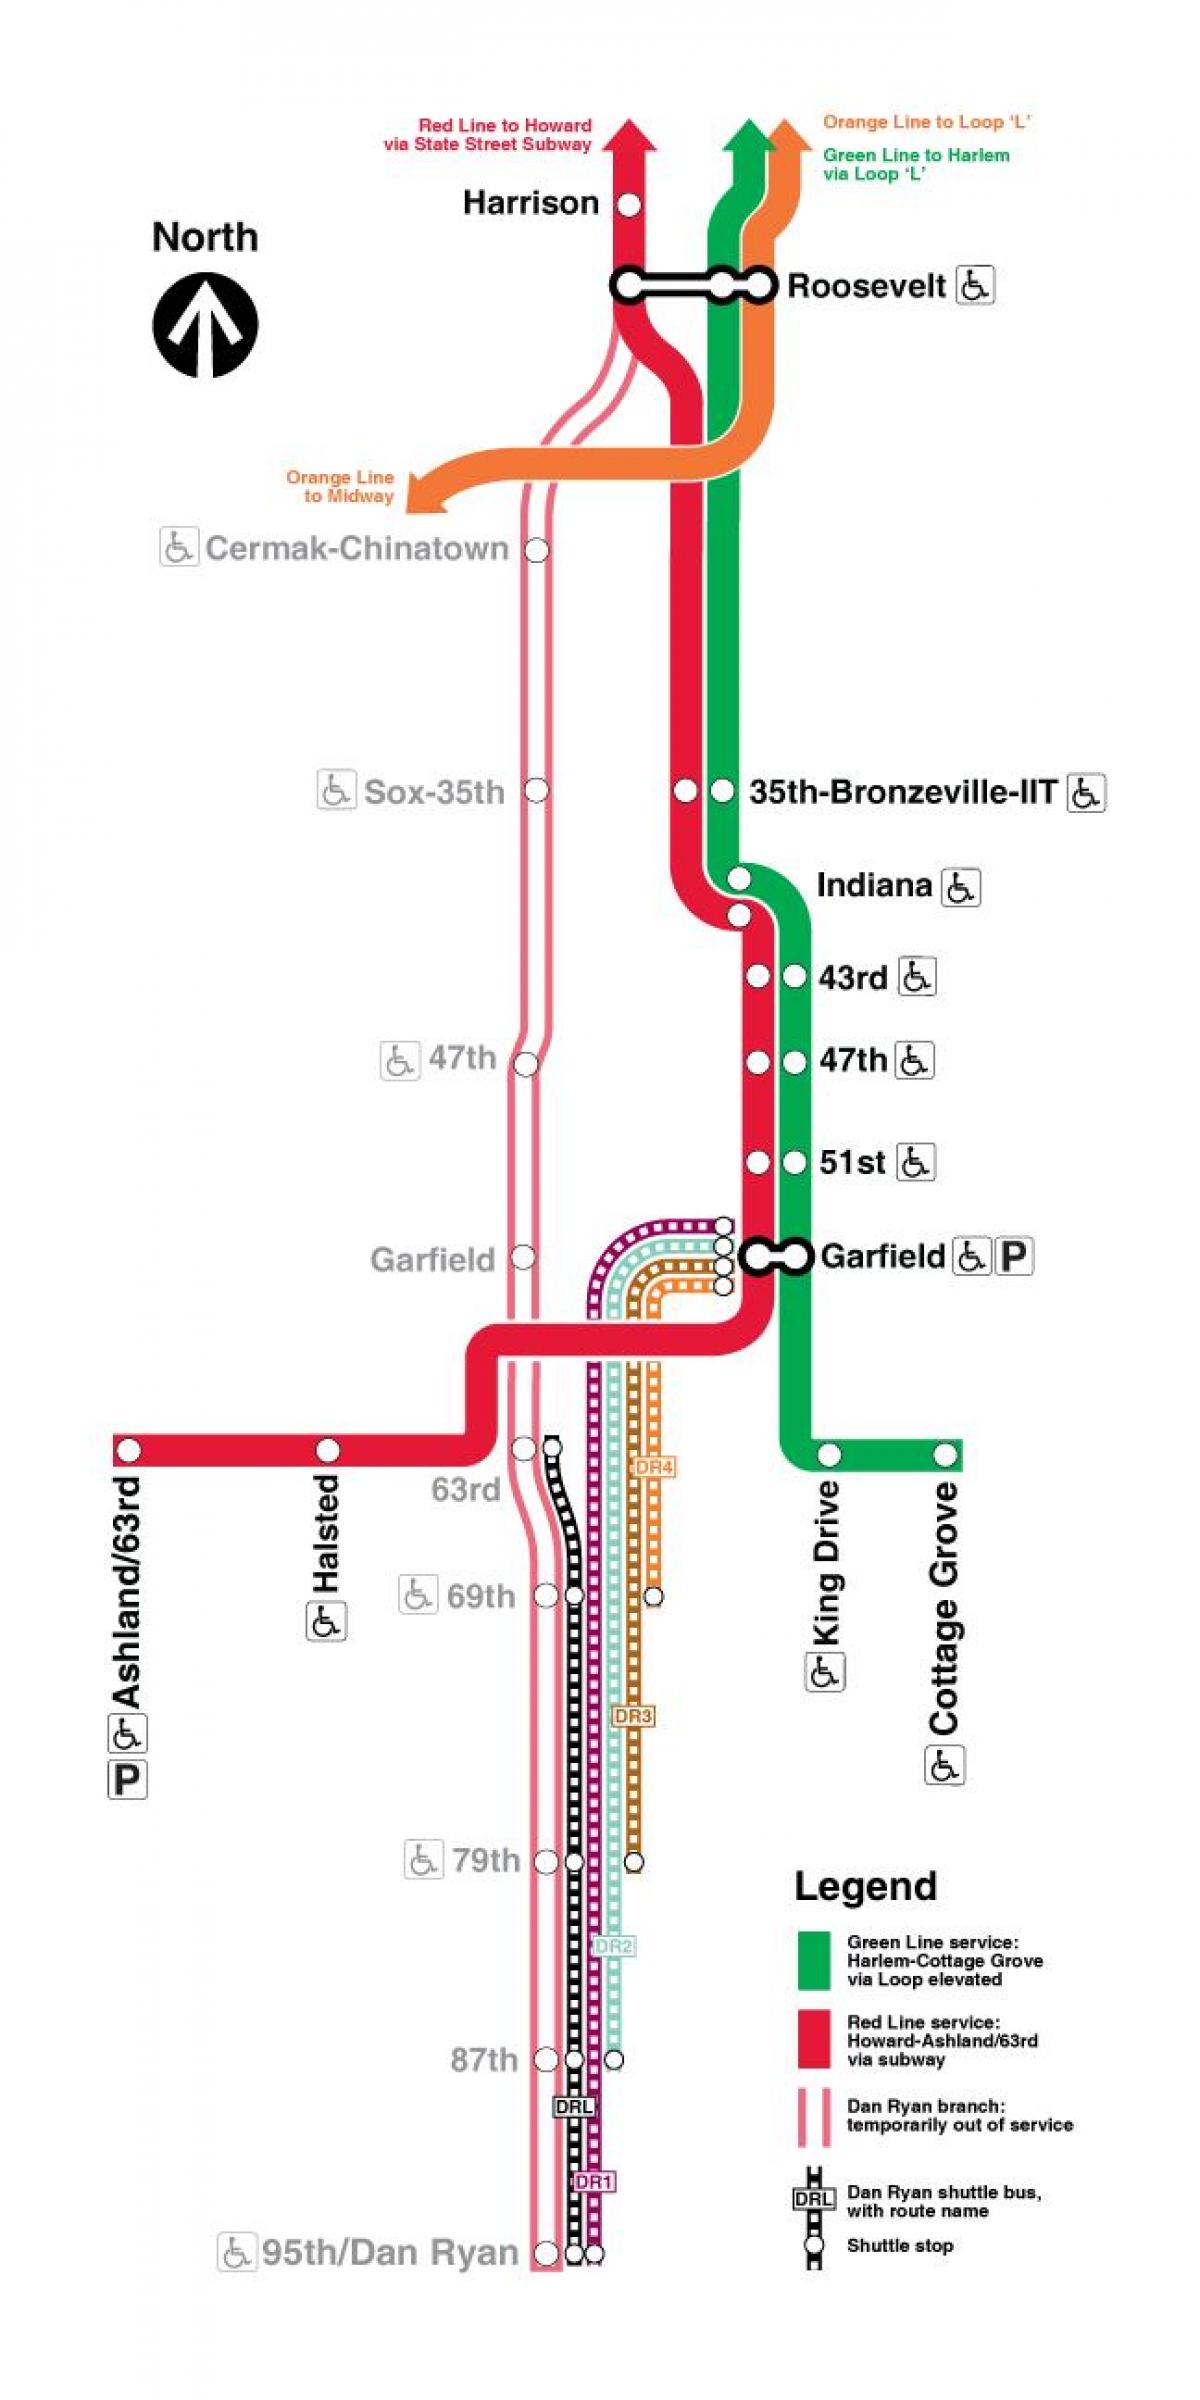 carte de la ligne rouge de Chicago